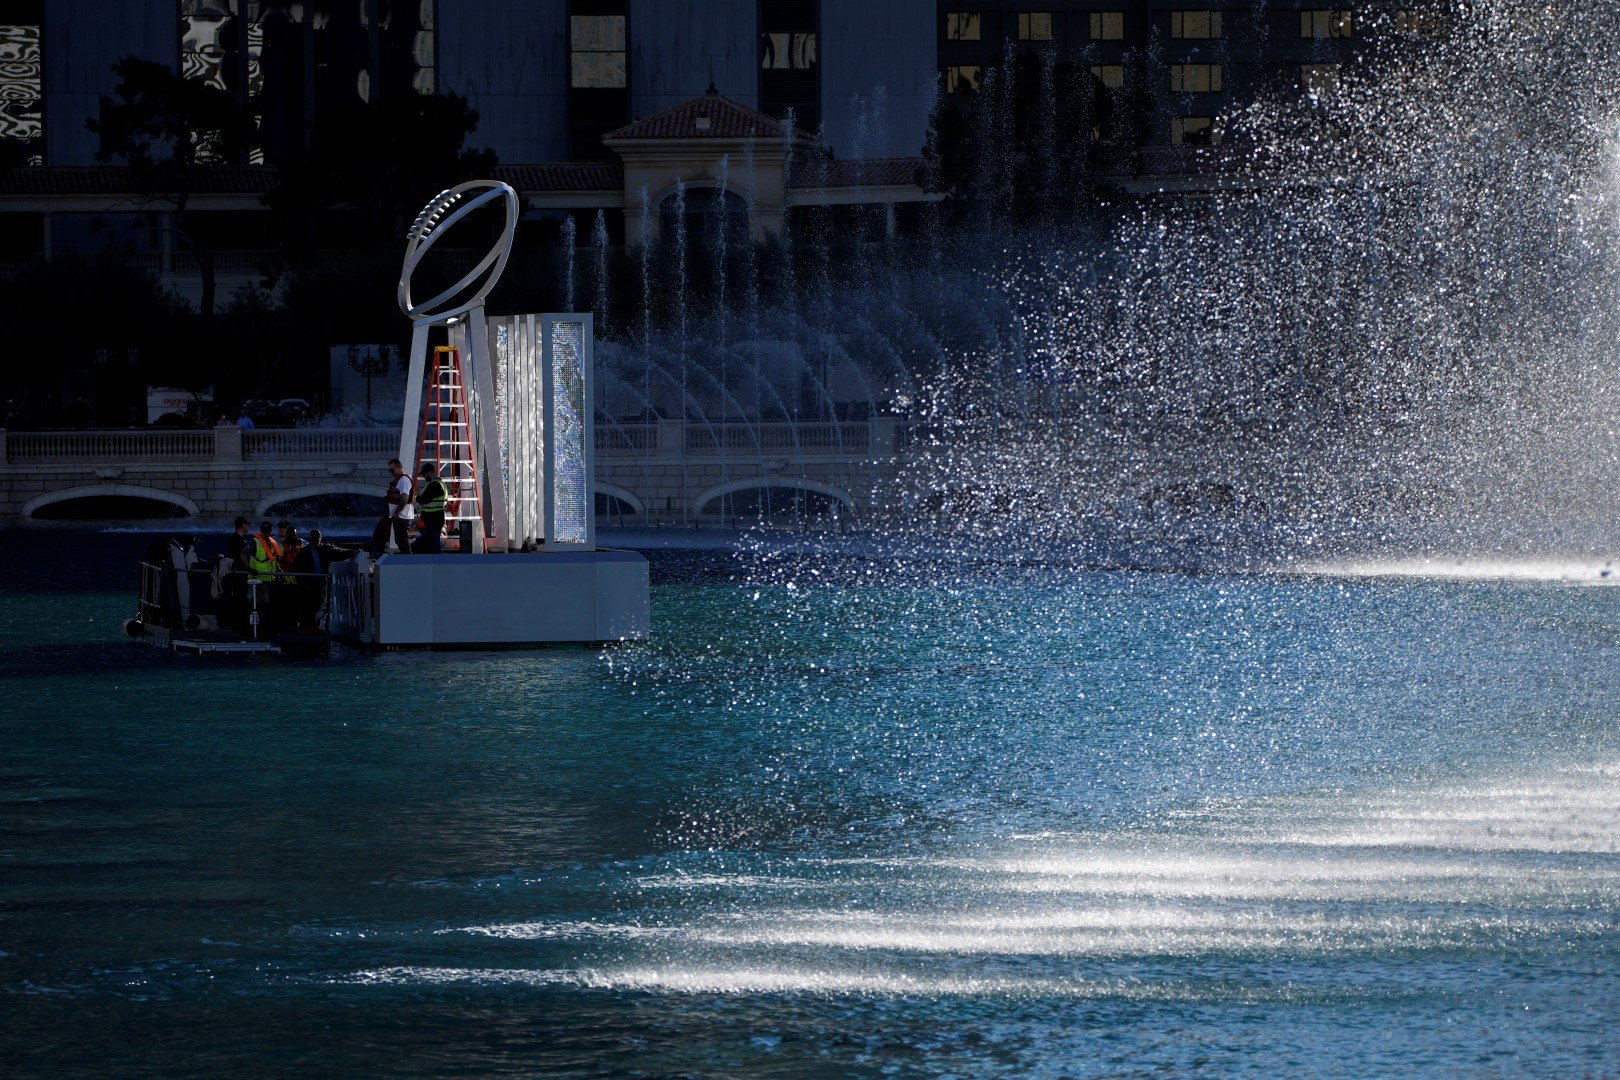 Лас Вегас се готви за Супербоул - фонтаните пред прочутия хотел "Беладжо" осъмнаха със статуя на купата "Винс Ломбарди" във водата